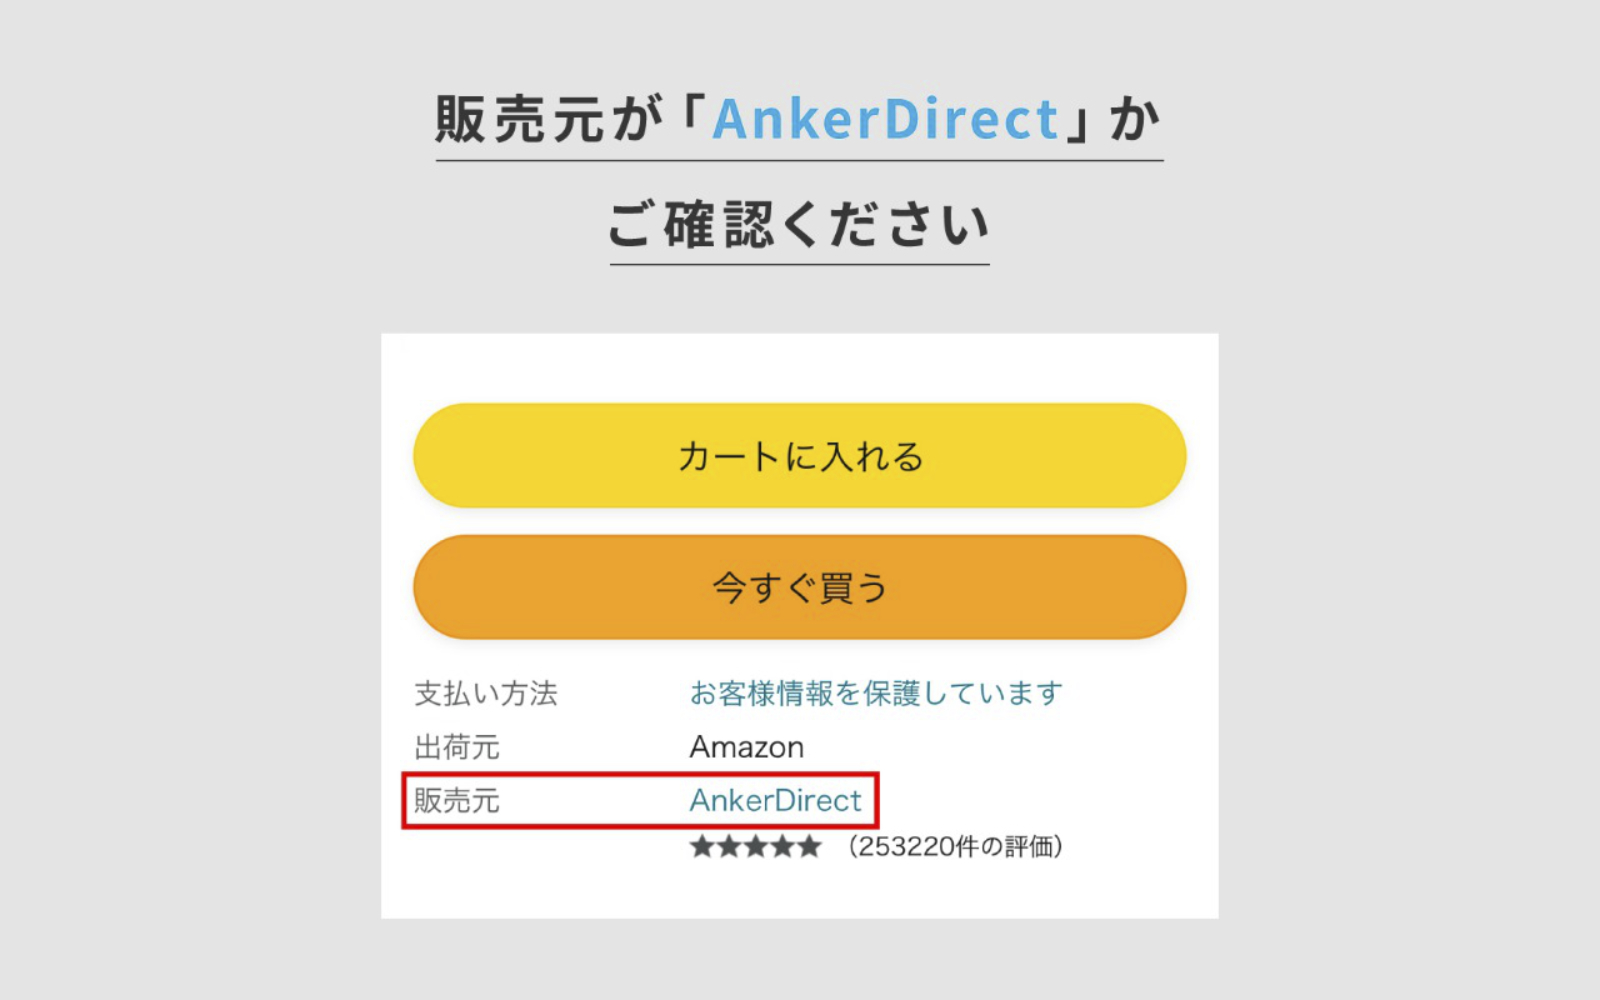 Anker Direct Daibiki Sagi